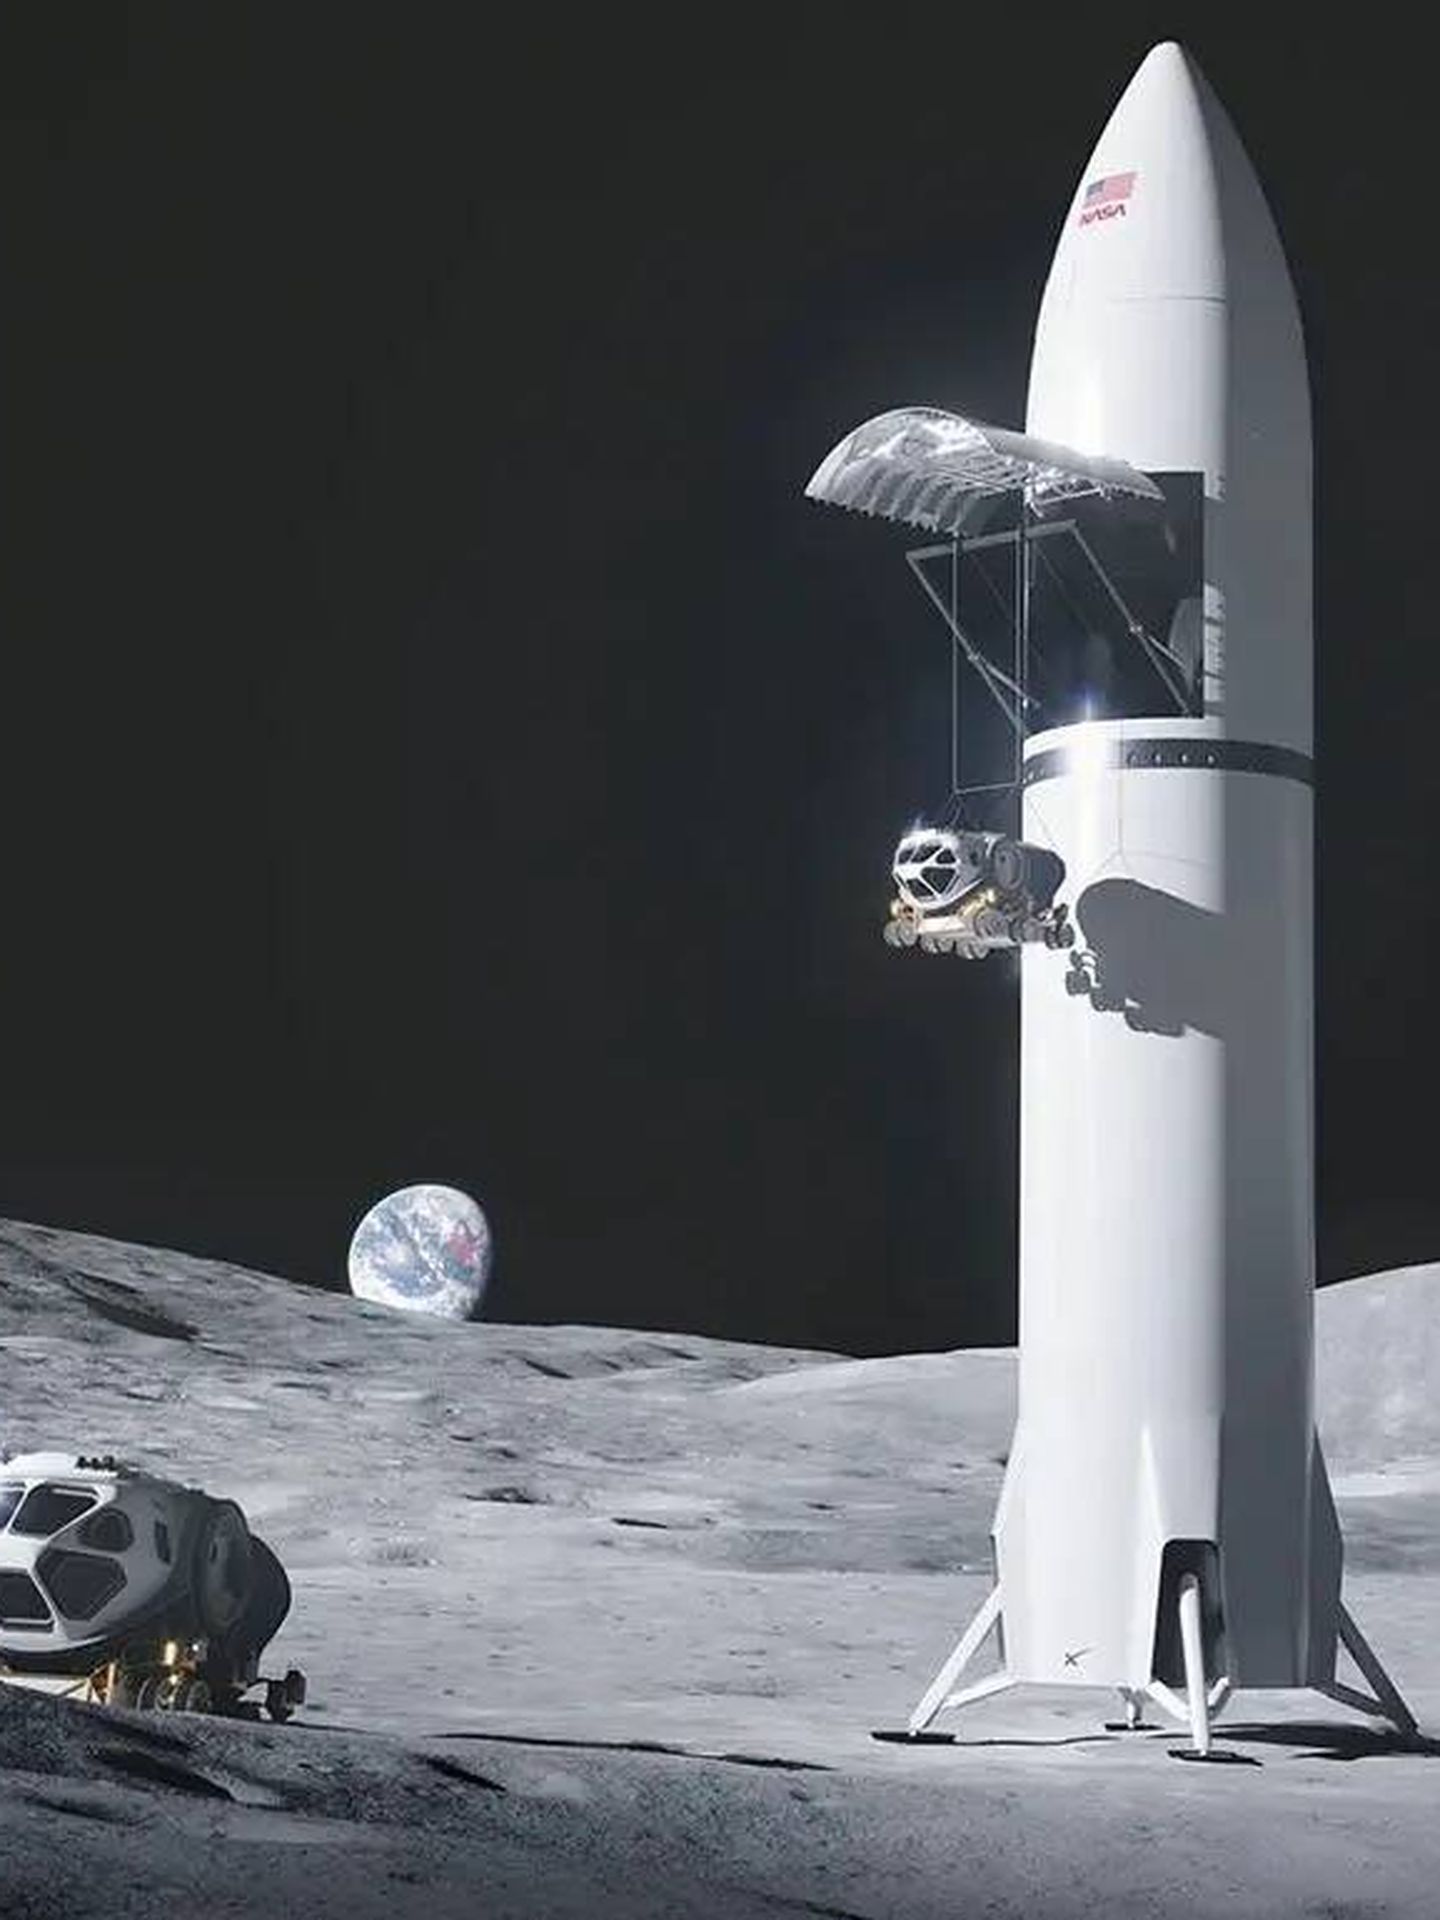 El último render del Starship Lunar de SpaceX, poniendo róvers en la superficie. (SpaceX)